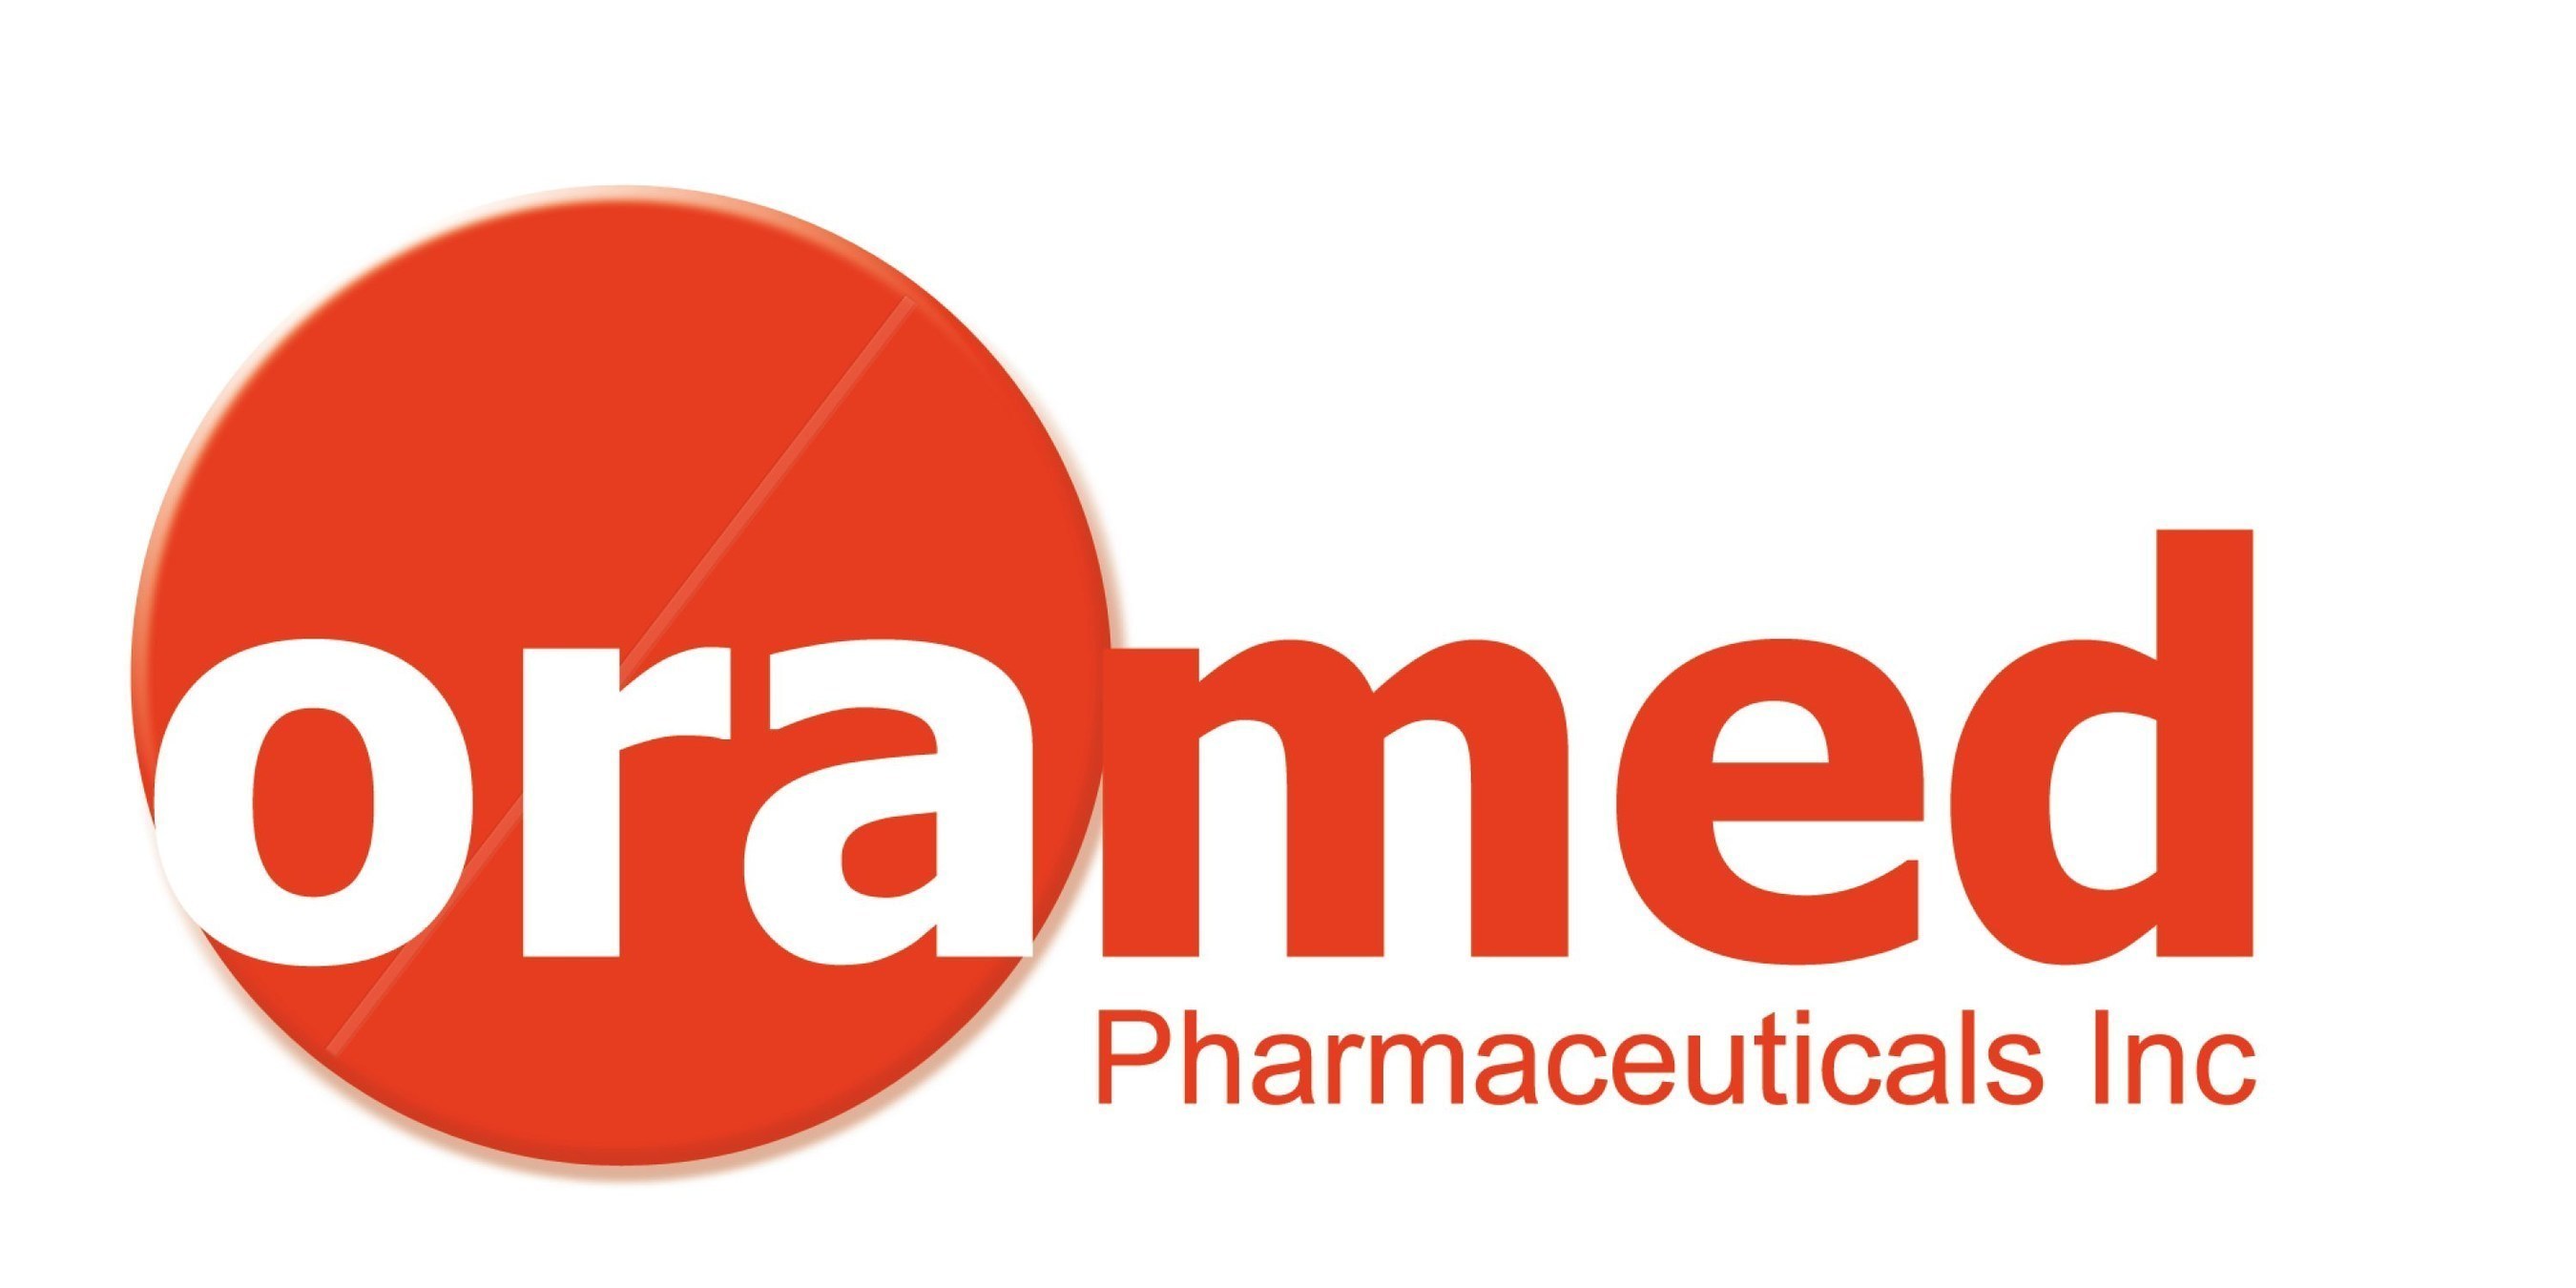 Oramed Pharmaceuticals Inc.